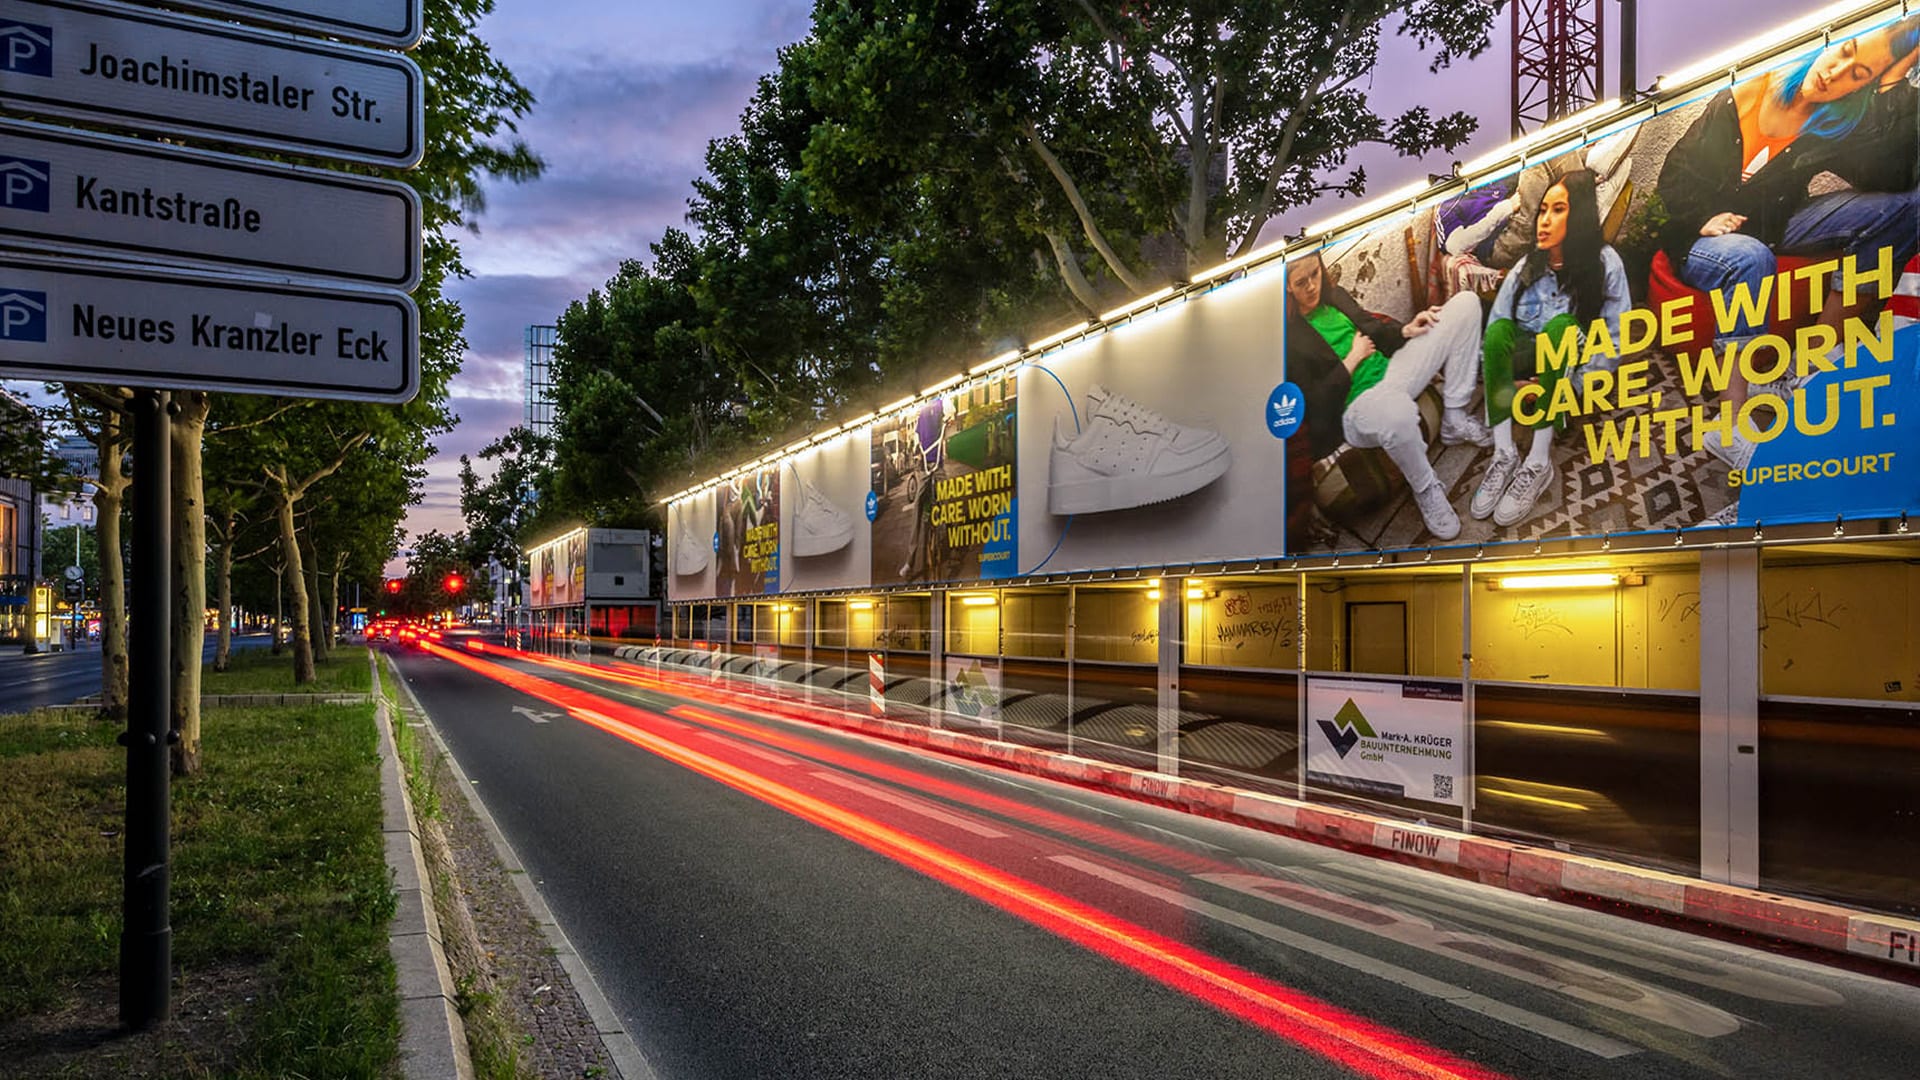 Werbekampagne von Adidas in Berlin am Kurfürstendamm